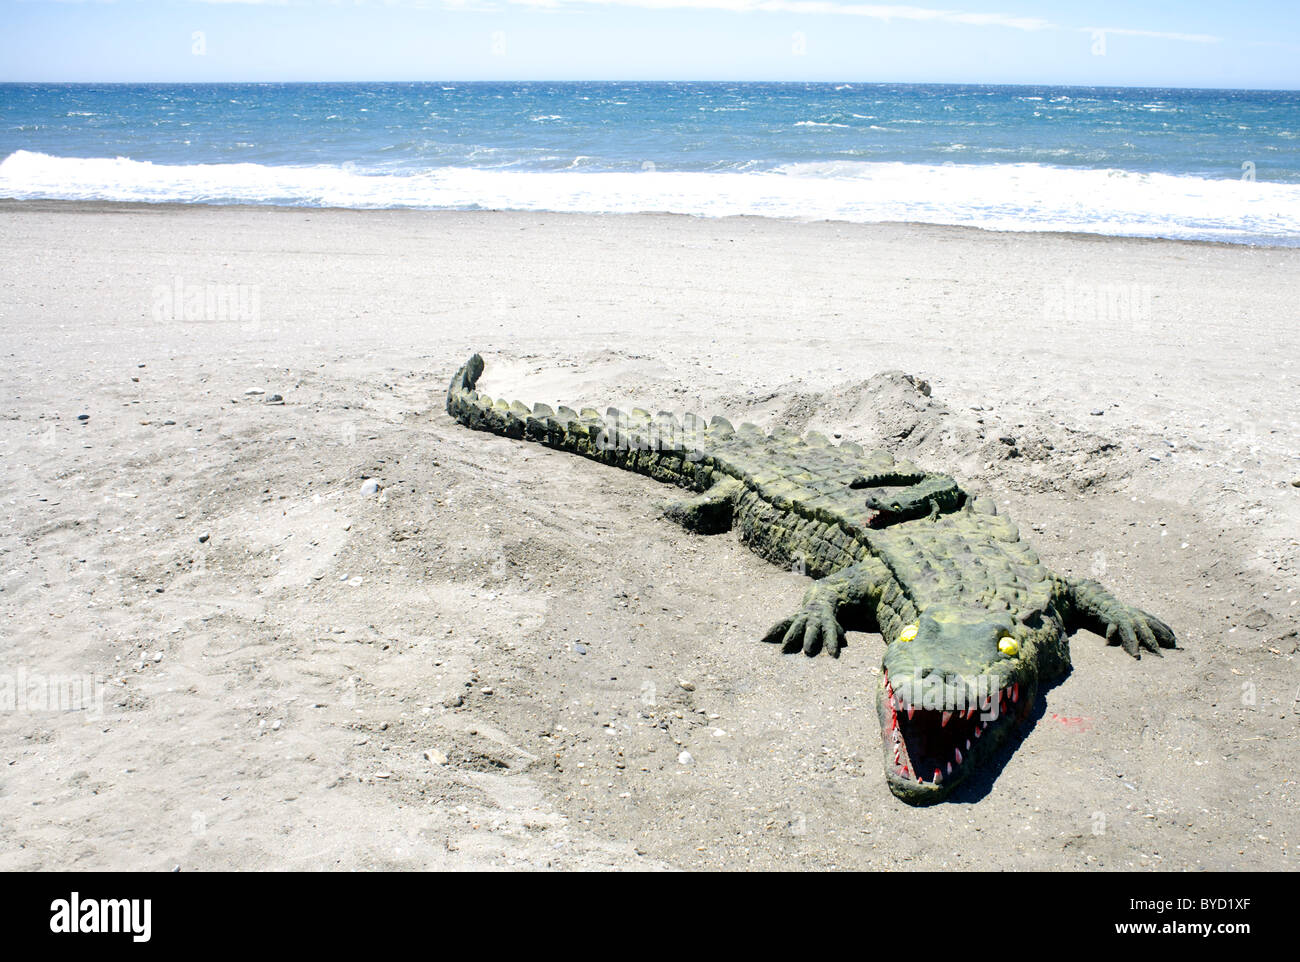 Réaliste, sable, art, sculpture, crocodile, sur la plage,,,,à Torrox Costa, plages espagnoles, resort, Espagnol, Banque D'Images